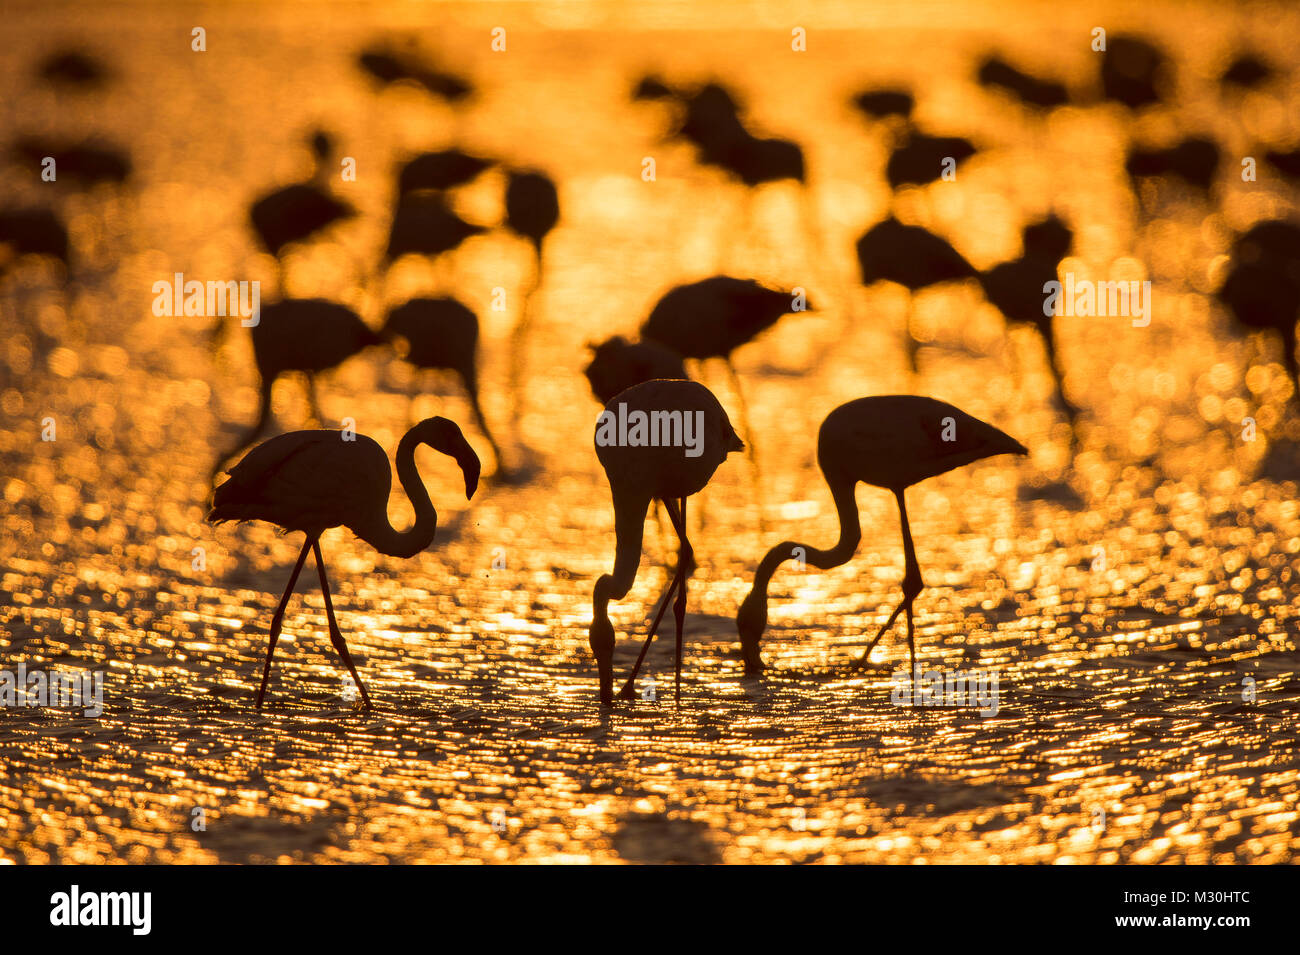 Europäische Flamingo, Flamingo, Phoenicopterus roseus, bei Sonnenaufgang, Saintes-Maries-de-la-Mer, Parc naturel régional de Camargue, Languedoc Roussillon, Frankreich Stockfoto